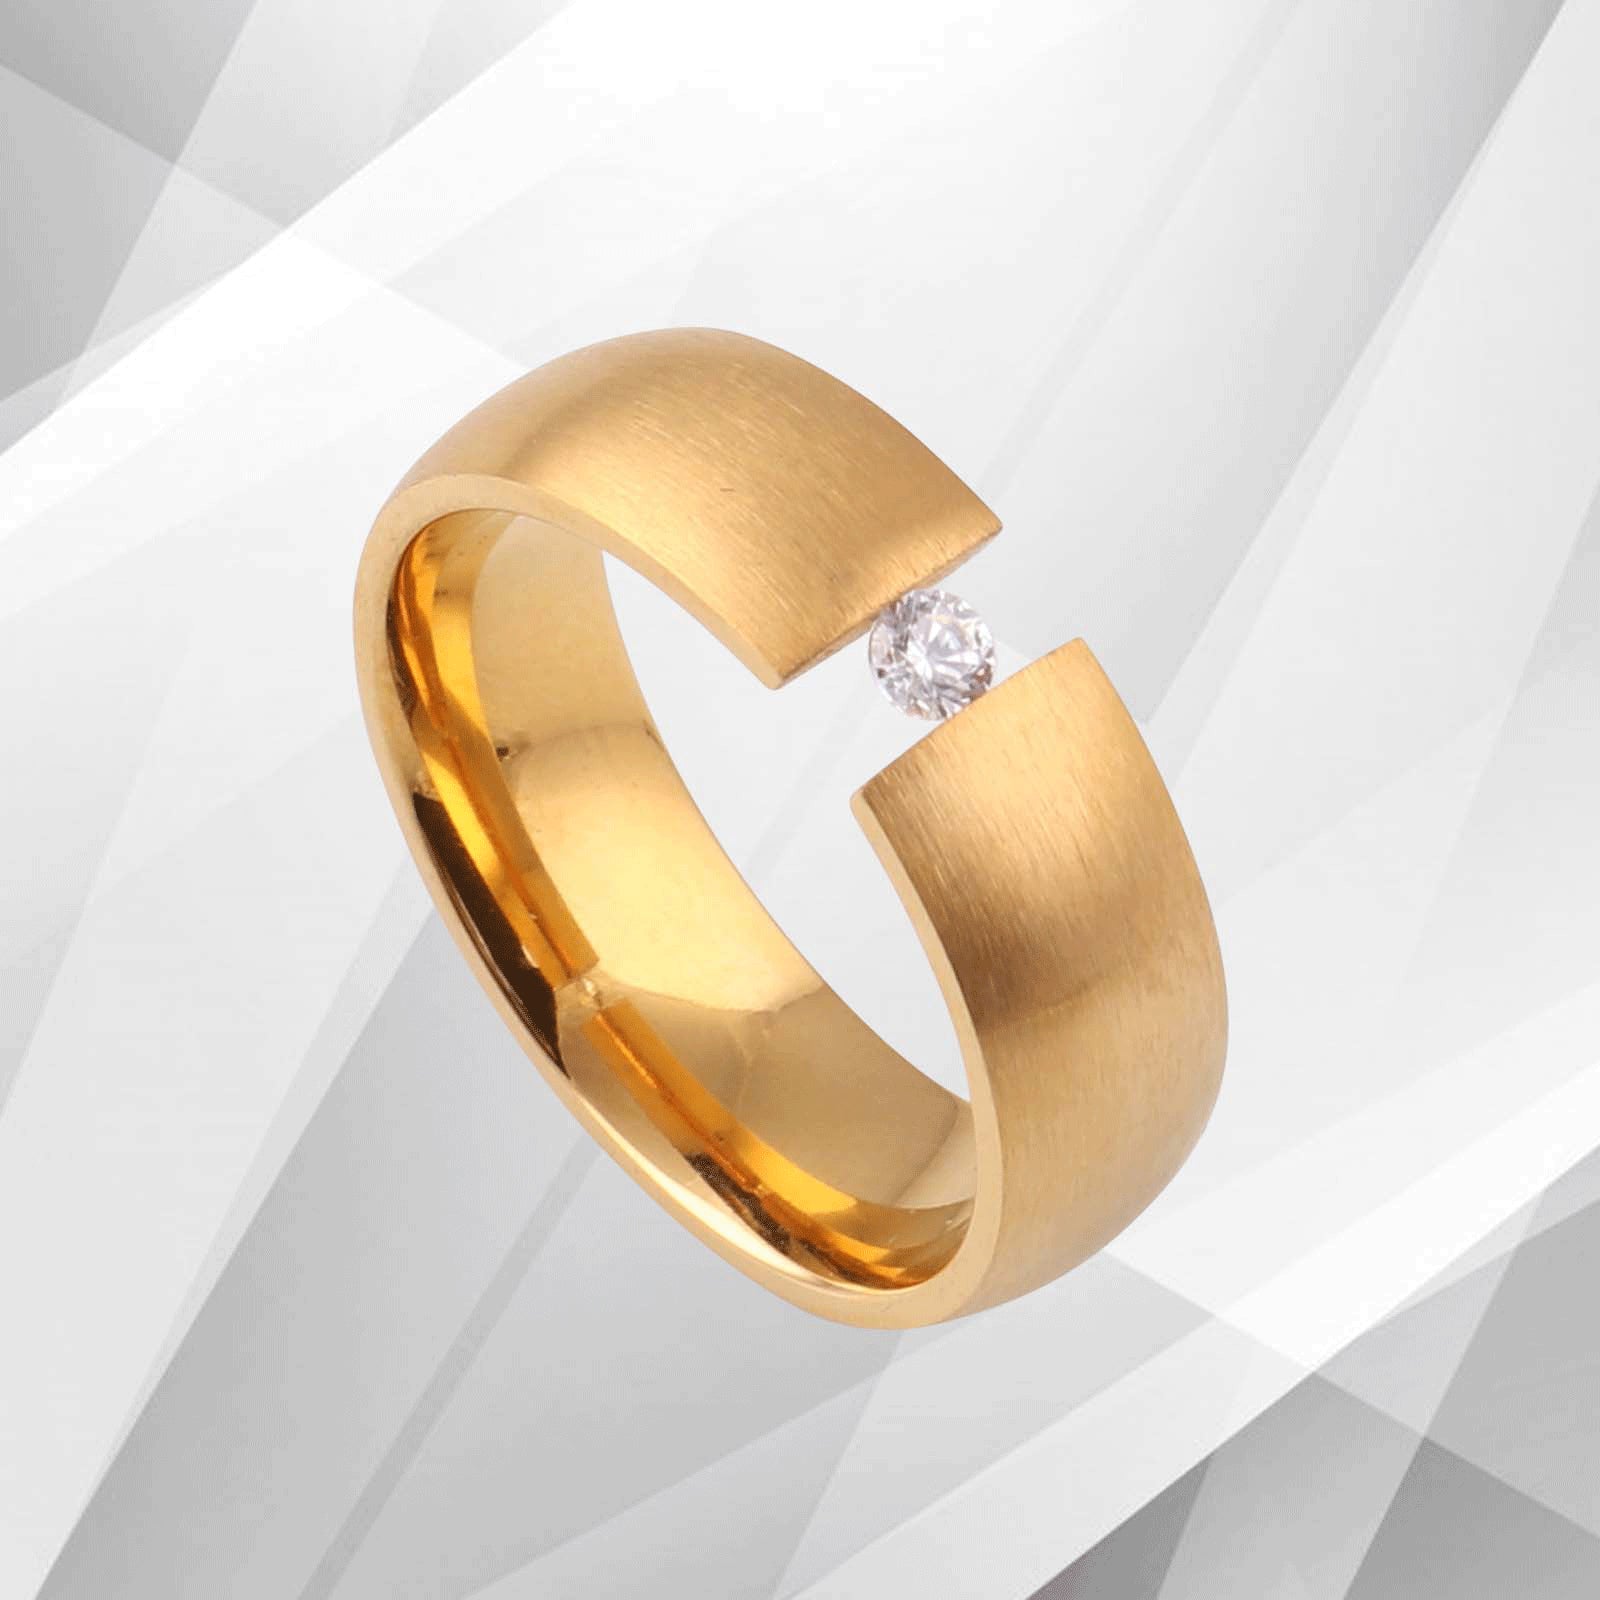 Titanium CZ Diamond Wedding Band Ring - 18Ct Yellow Gold Finish, Comfort Fit, Women's Gift - Jewelry & Watches - Bijou Her -  -  - 